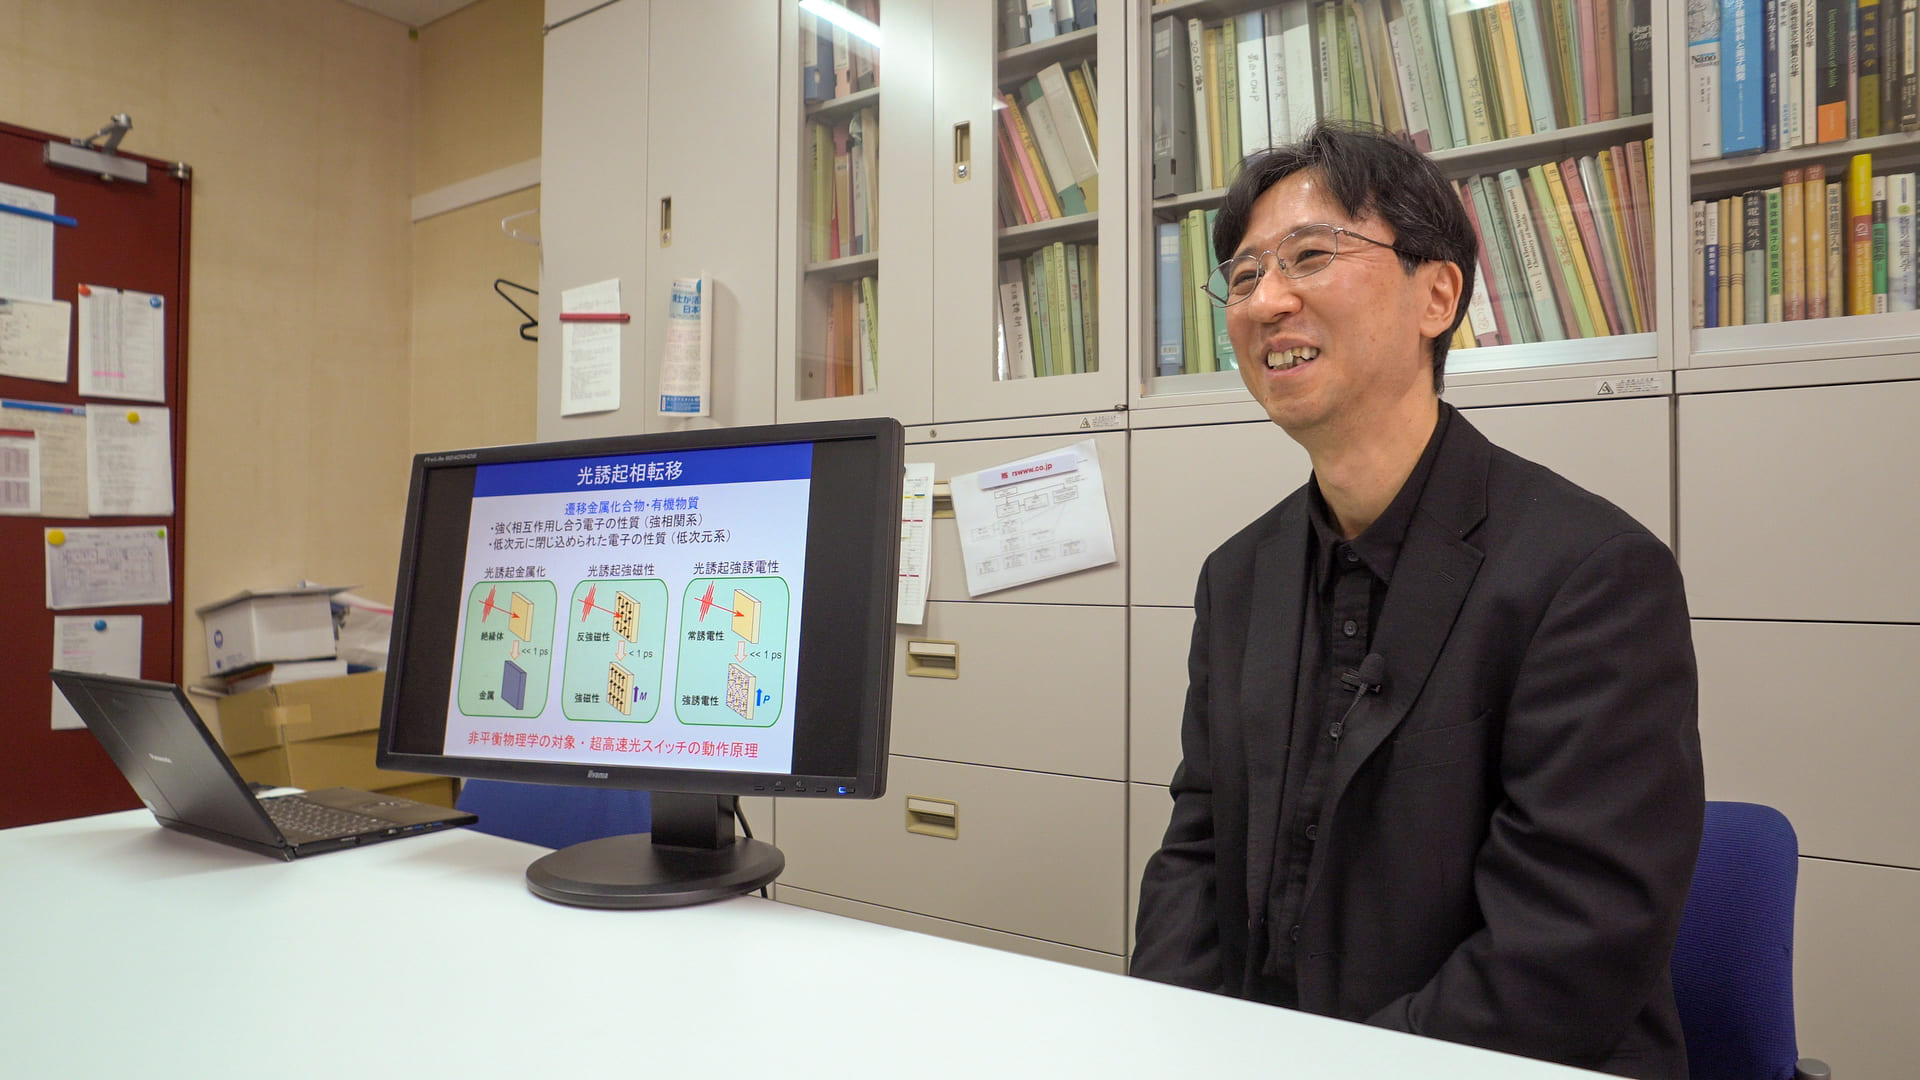 Professor Hiroshi Okamoto